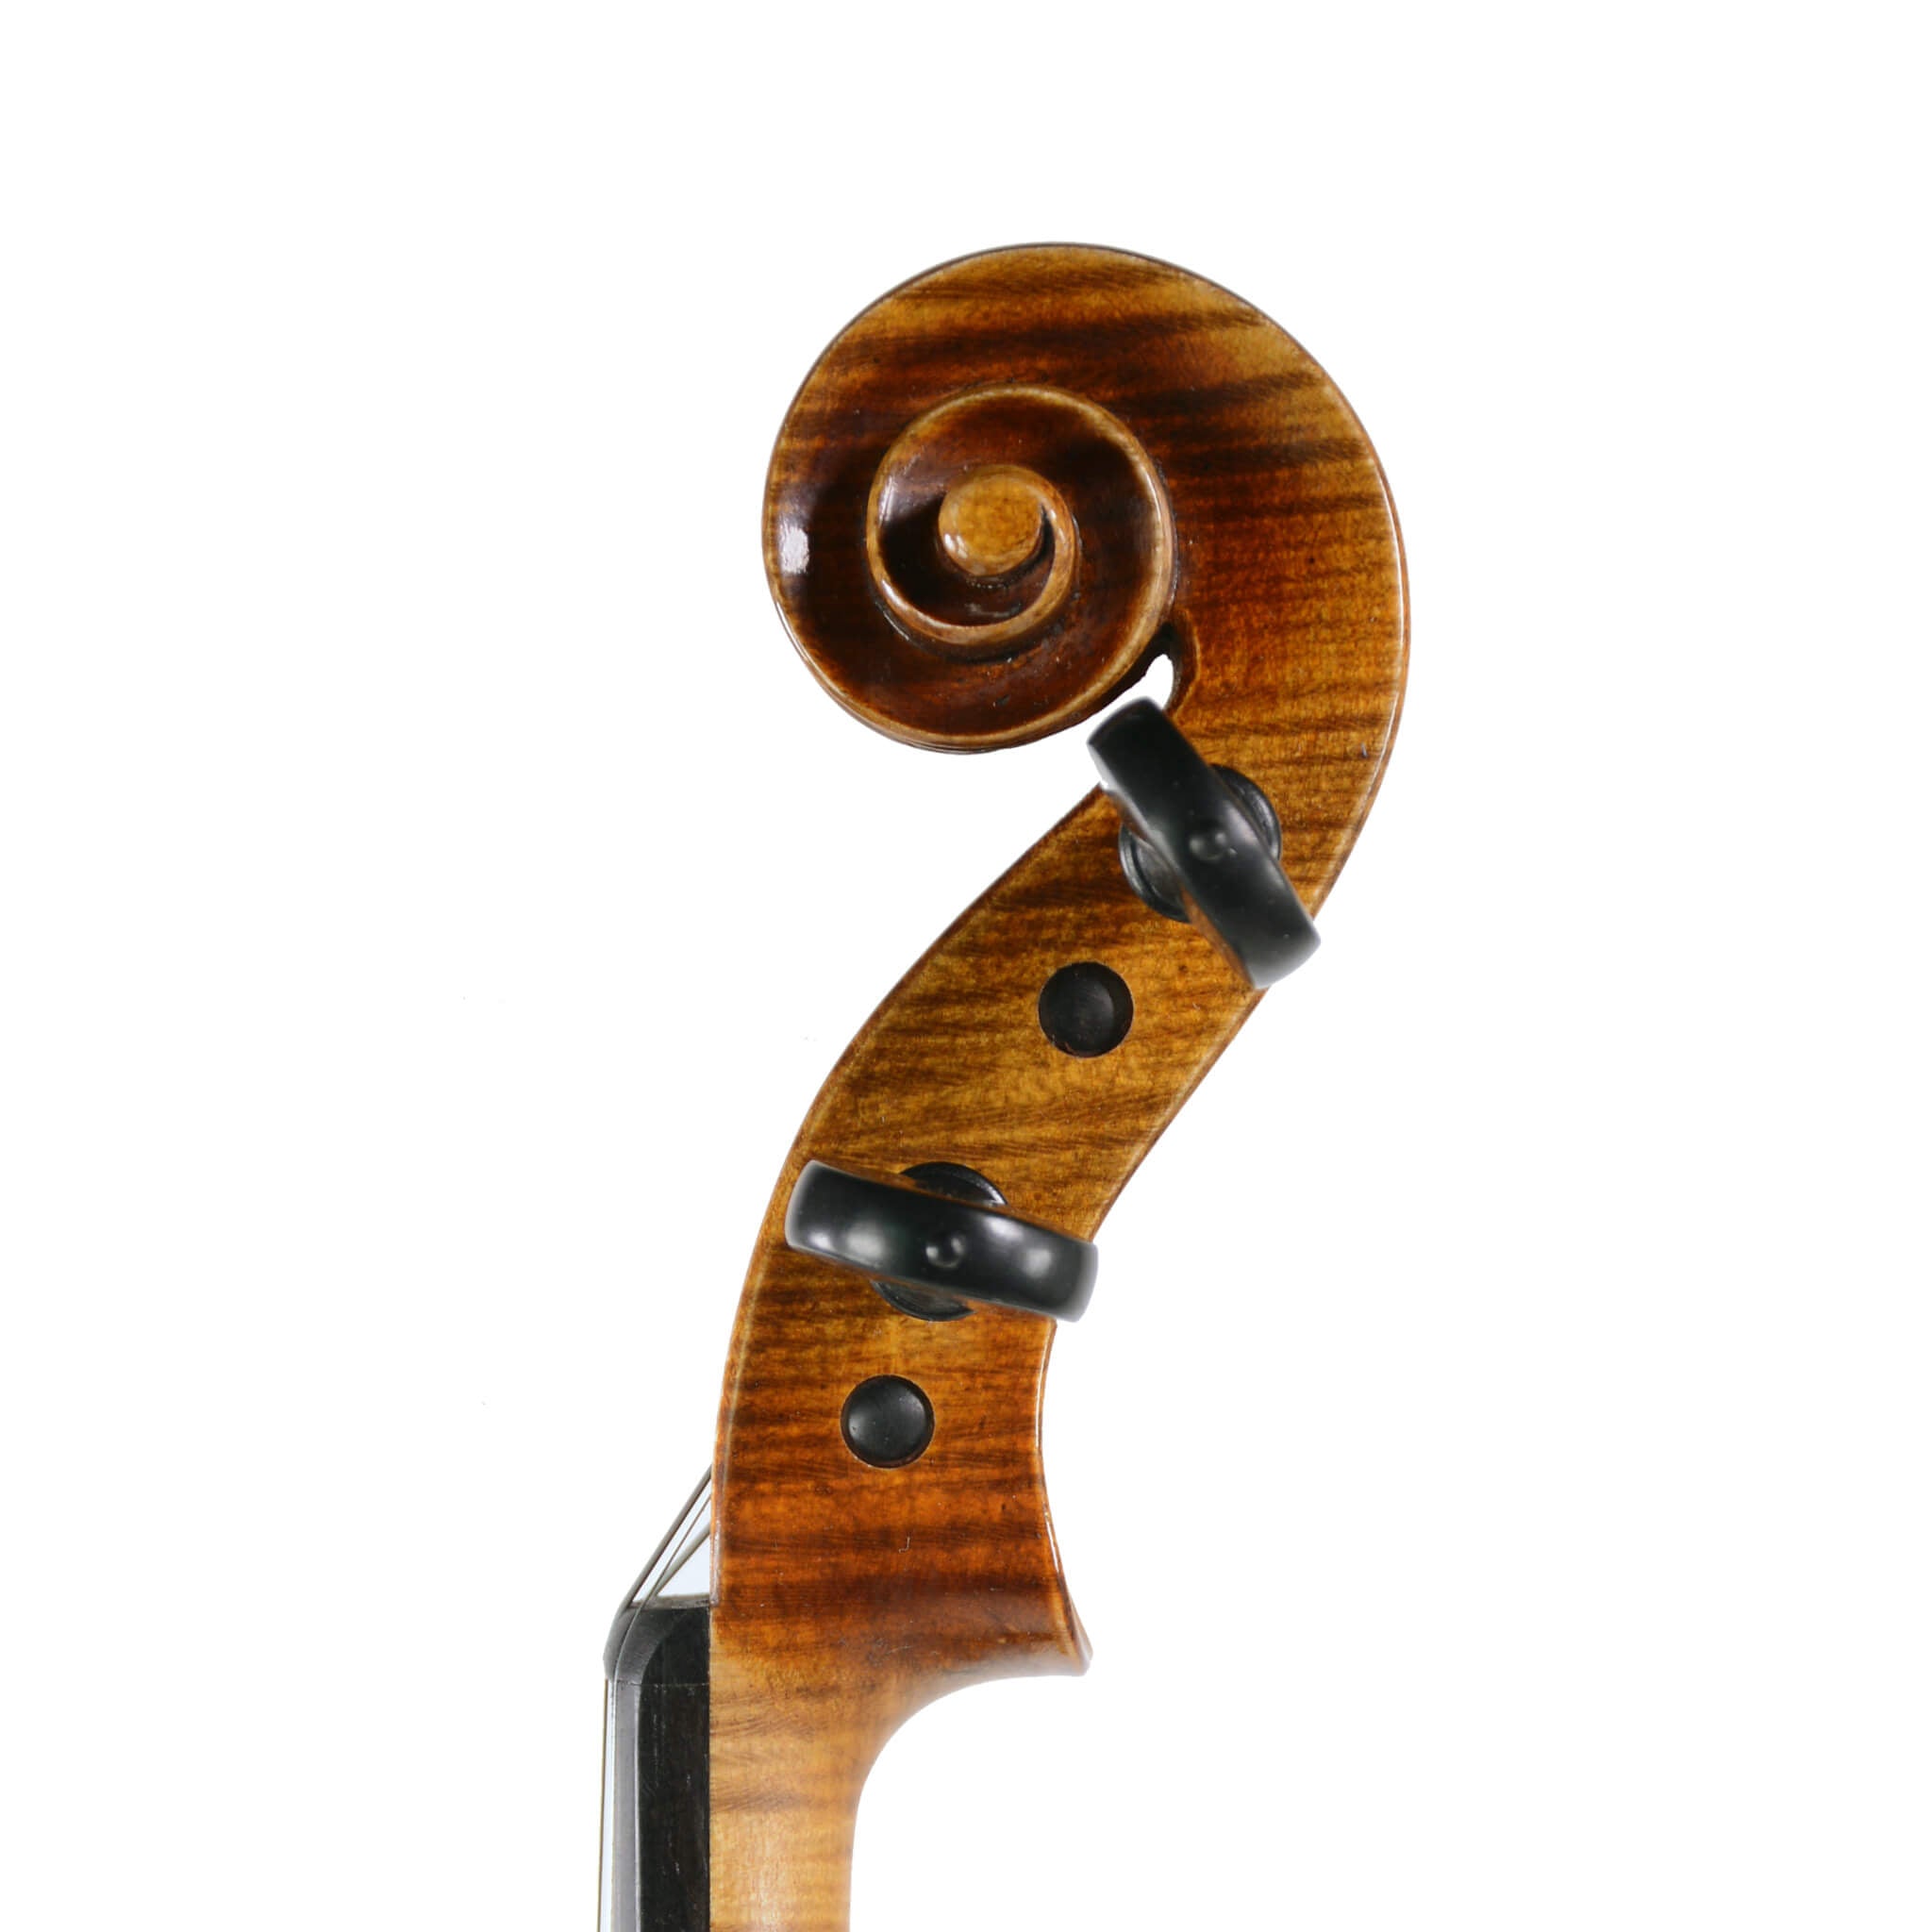 Klaus Heffler Il Perfetta Violin